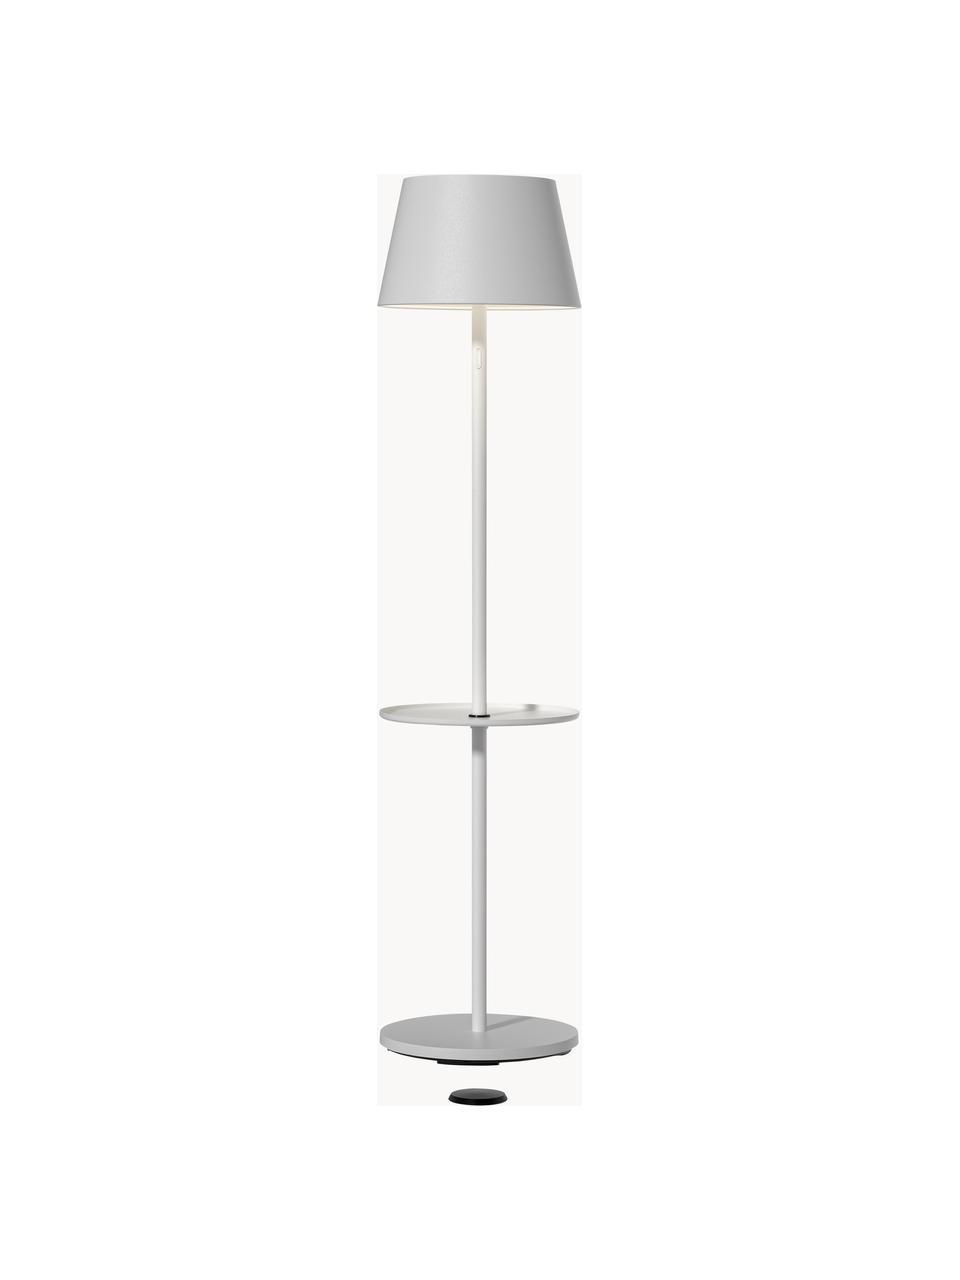 Lampe d'extérieur LED mobile à intensité variable Garcon, Blanc, haut. 150 cm